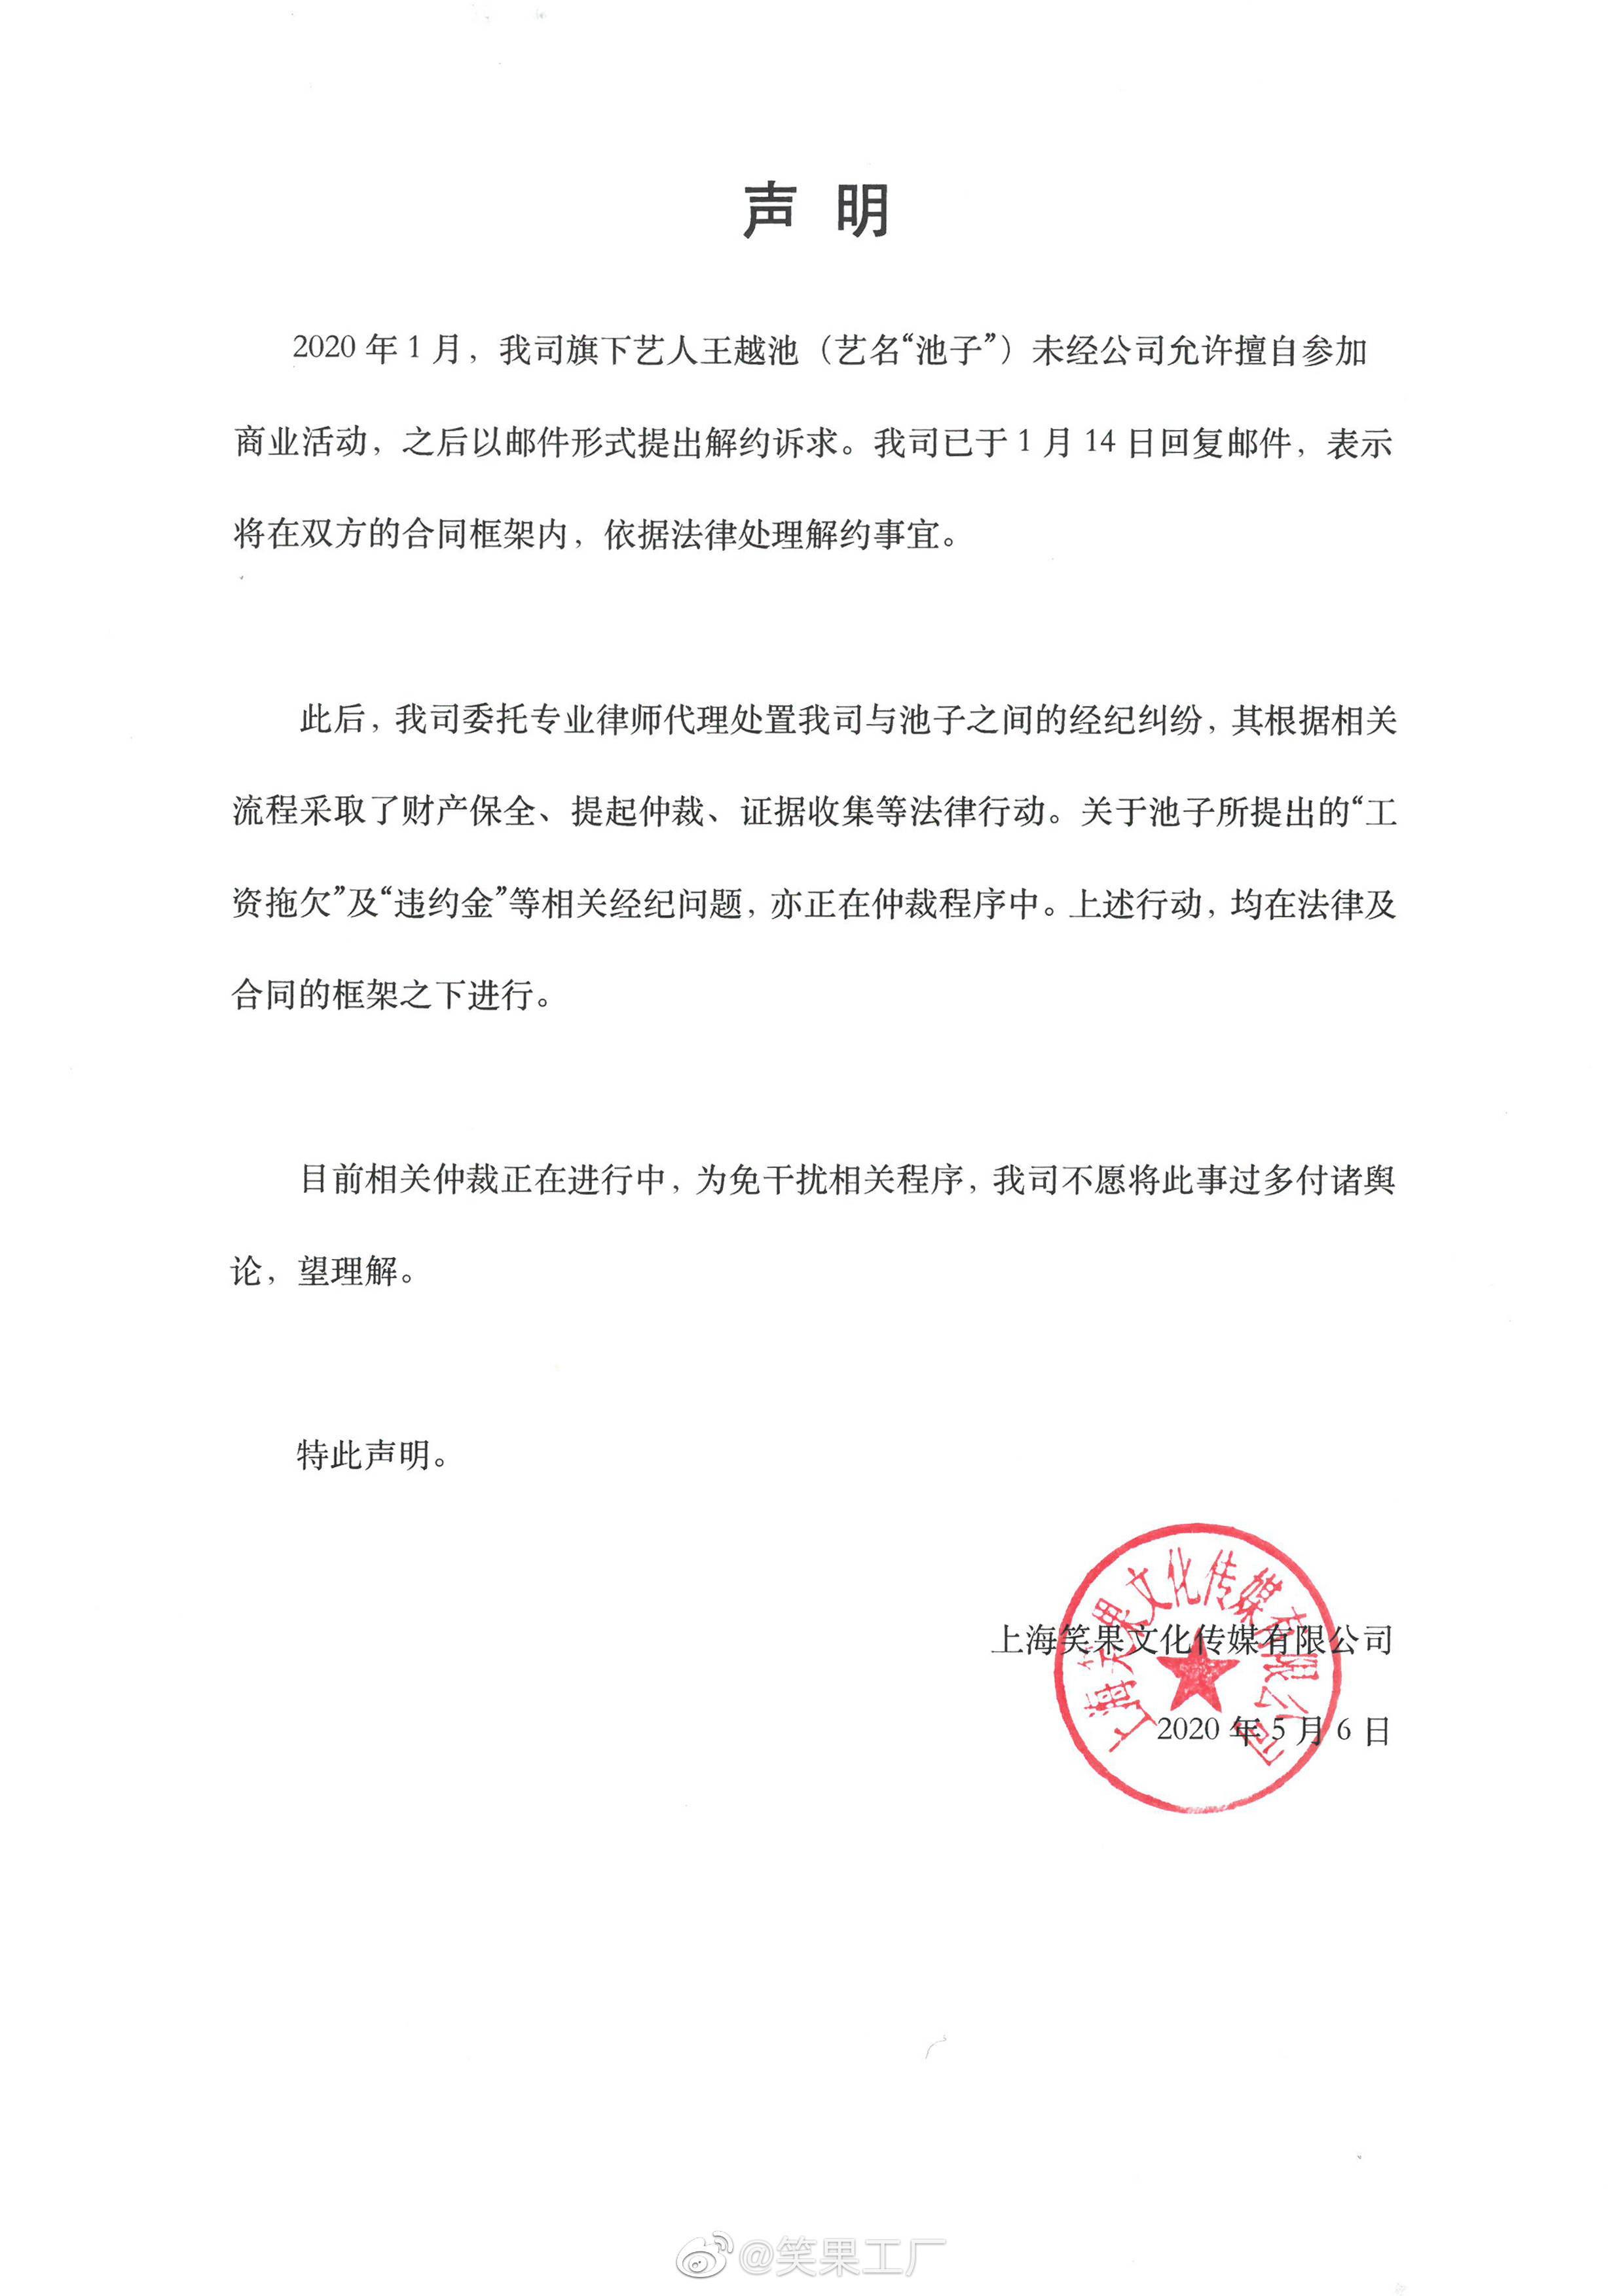 上海虹口法院回应 池子账户被冻结 财产保全符合法律规定